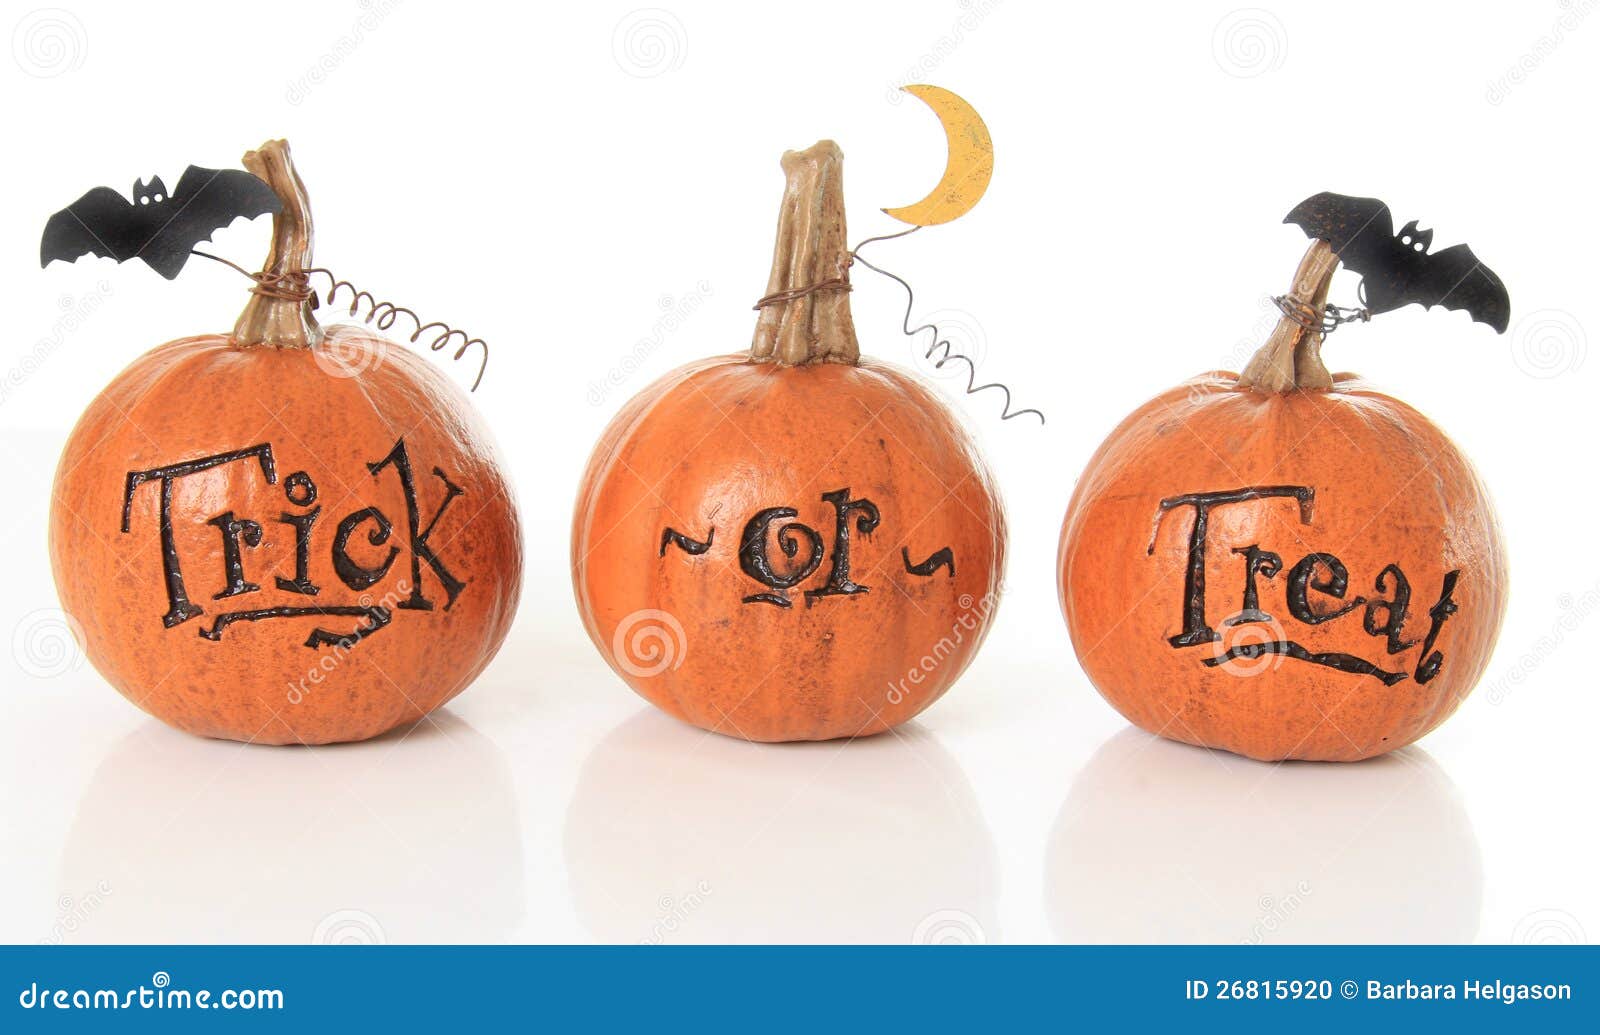 trick or treat pumpkins